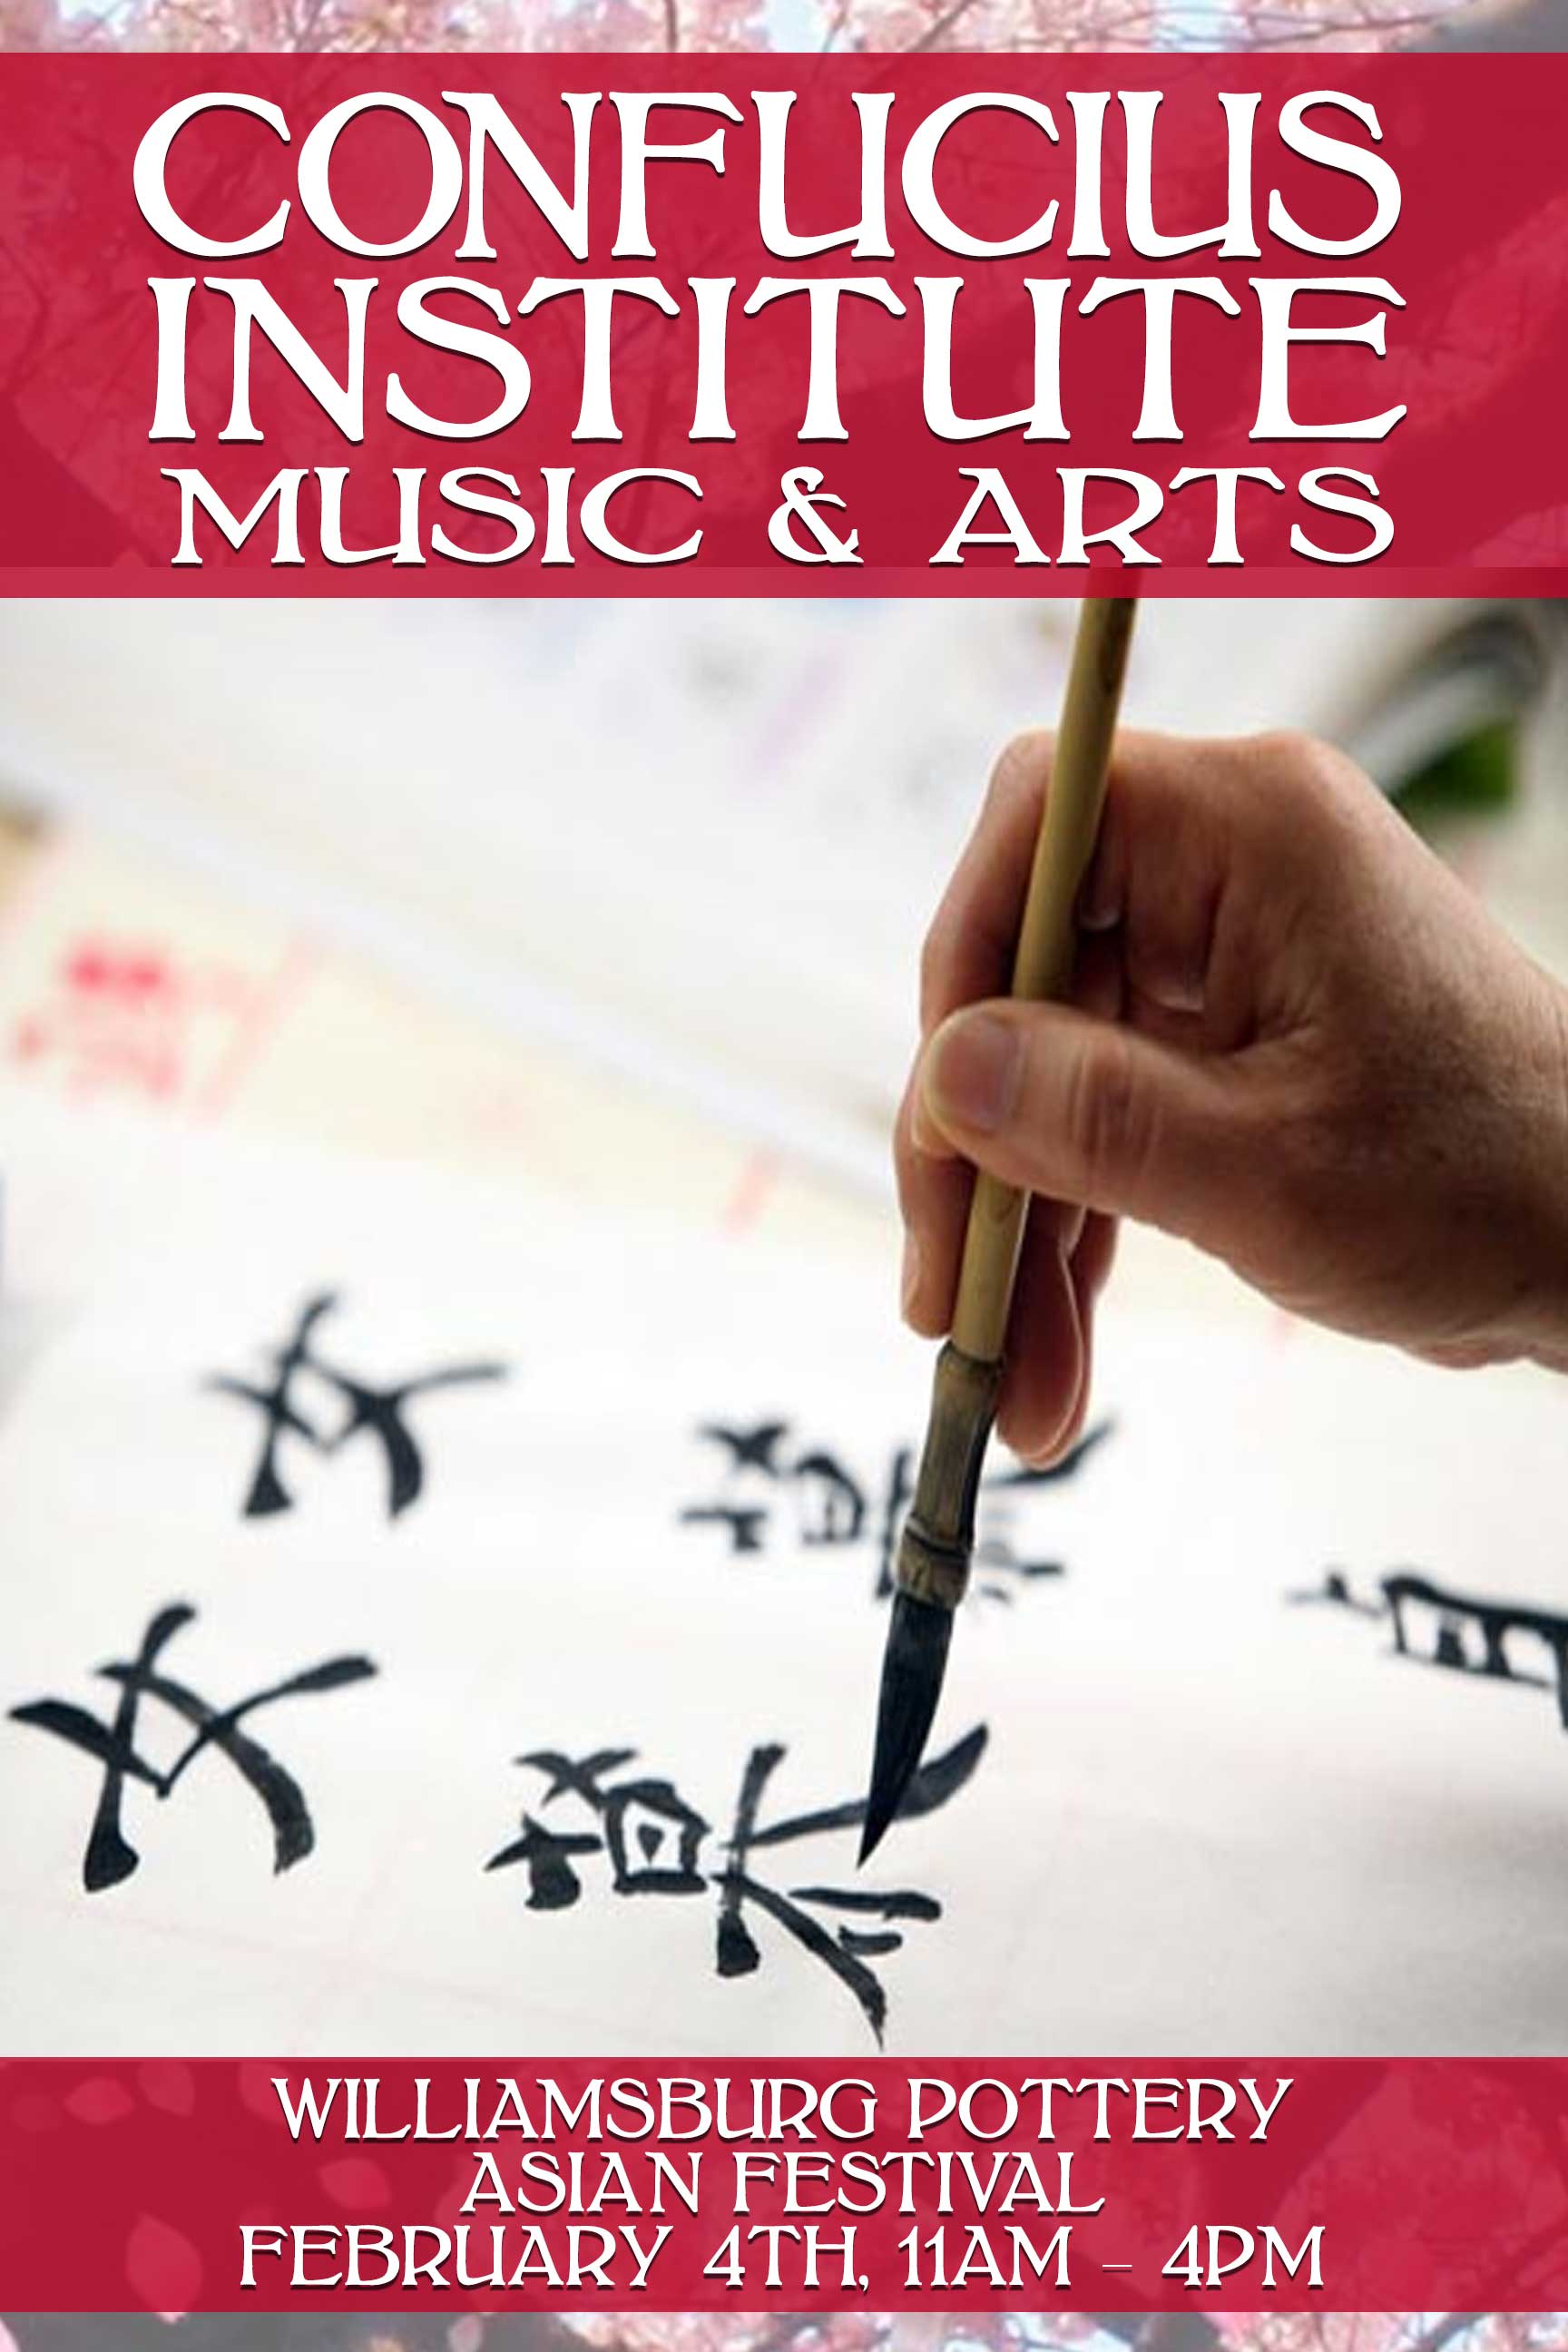 Confucius Institute Music & Arts